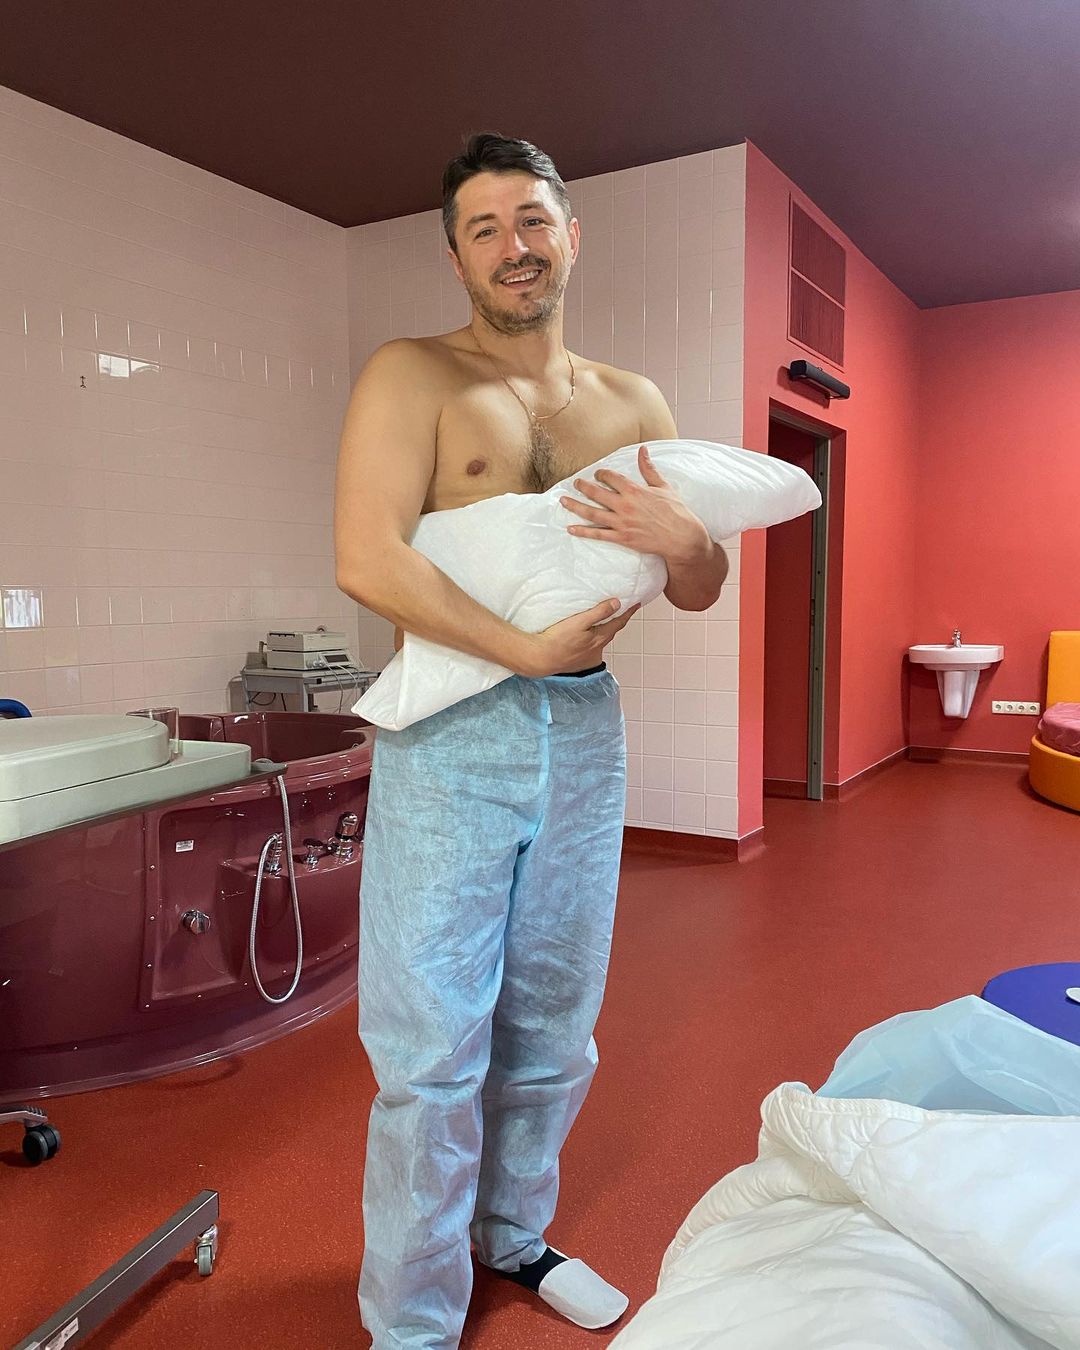 Сергей Притула в третий раз стал отцом